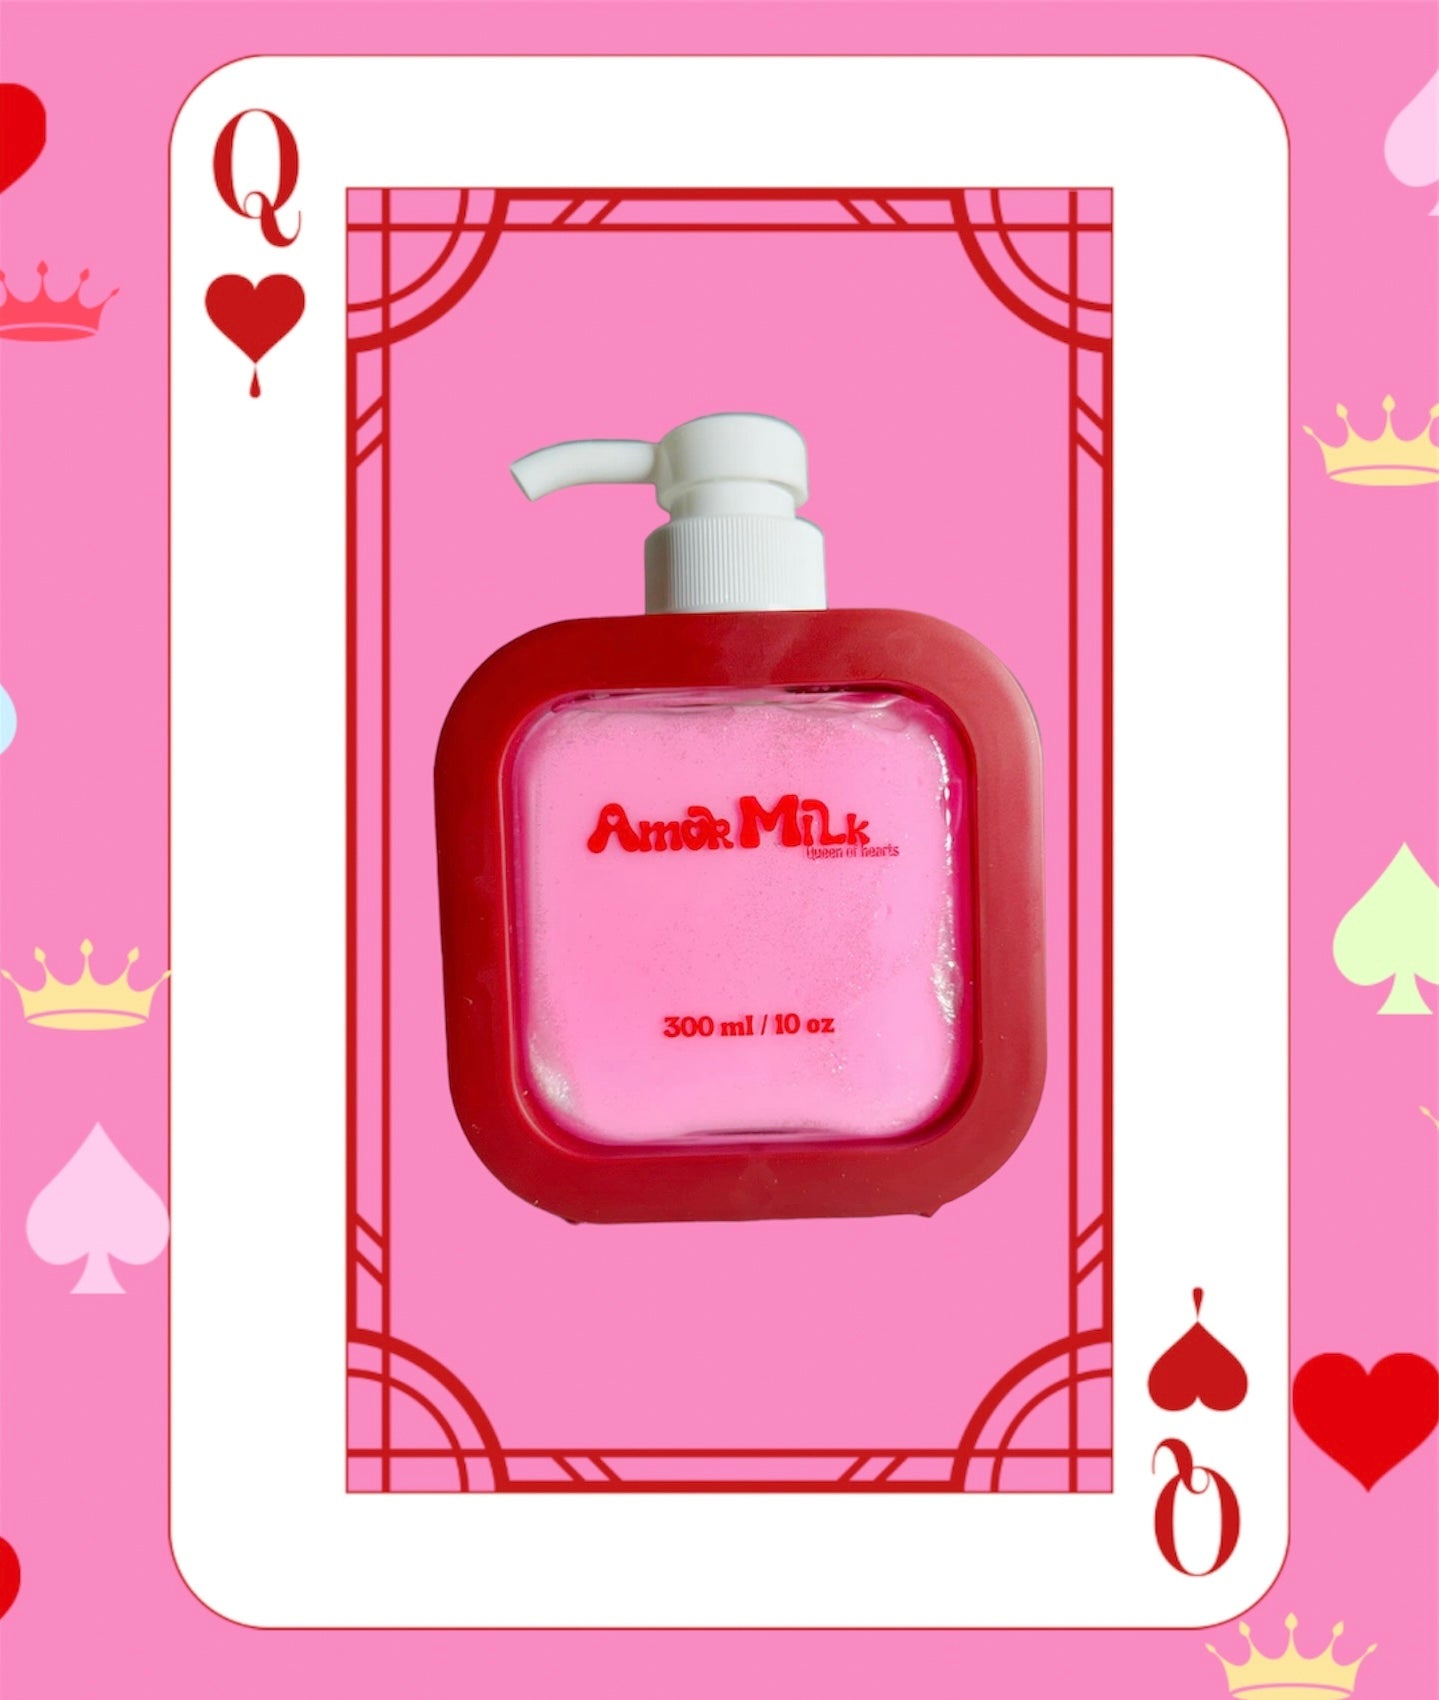 AmorMilk | pink sugar |